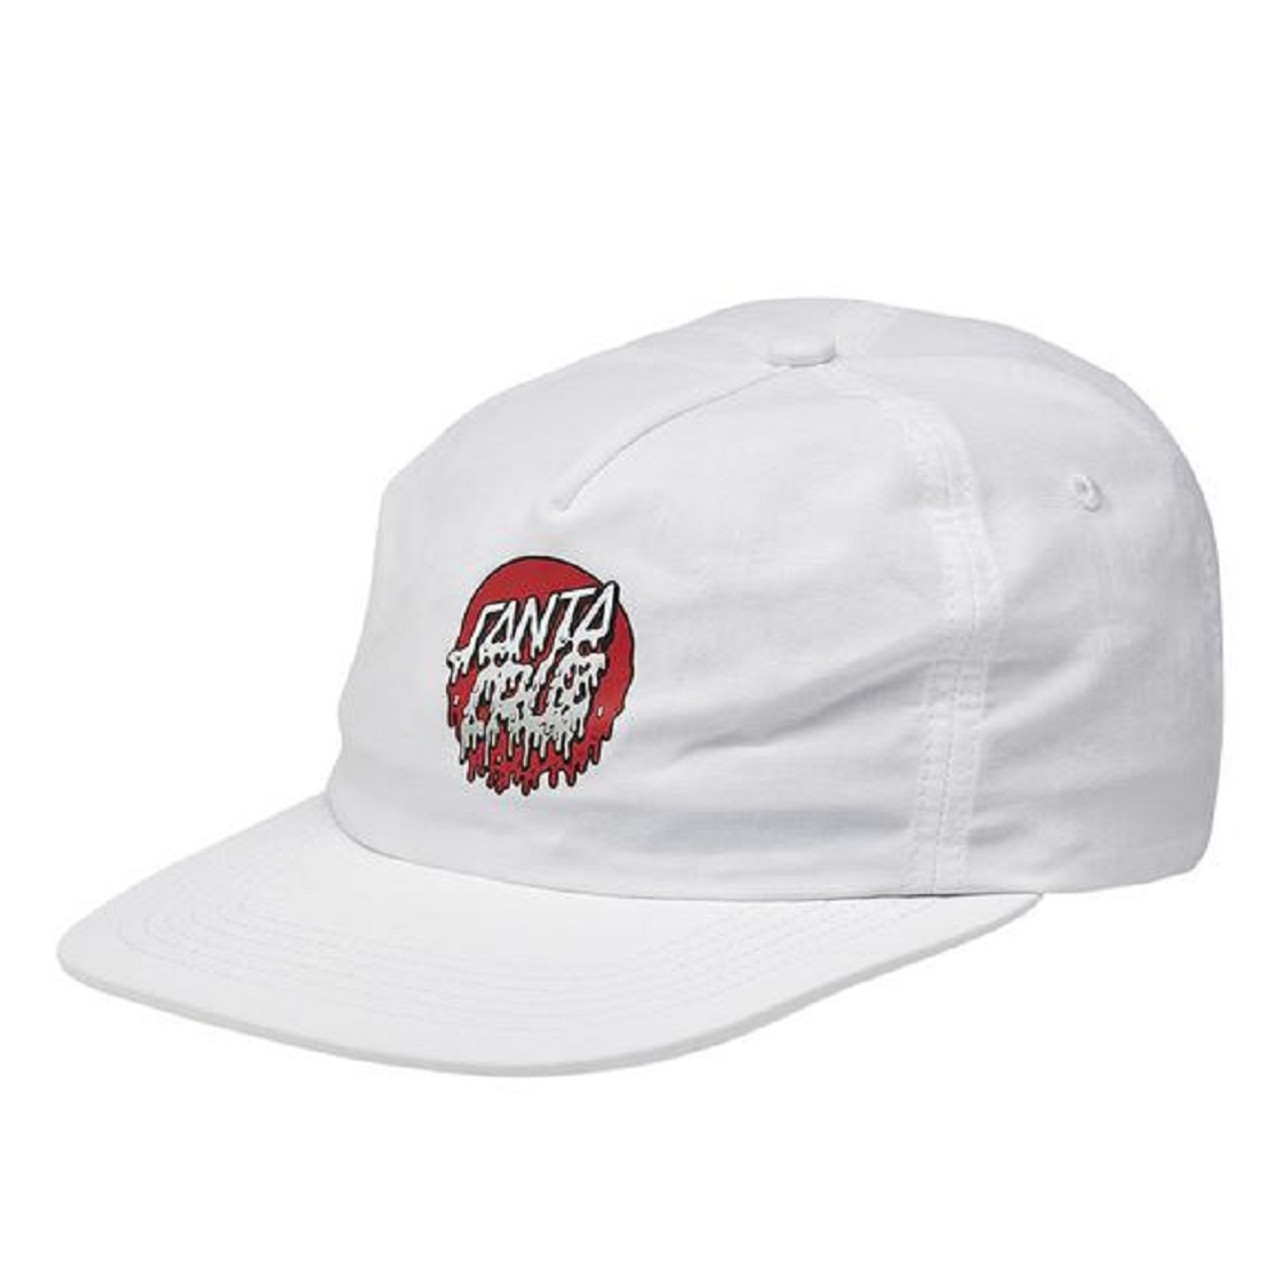 Santa Cruz Rad Dot Hat White Snapback